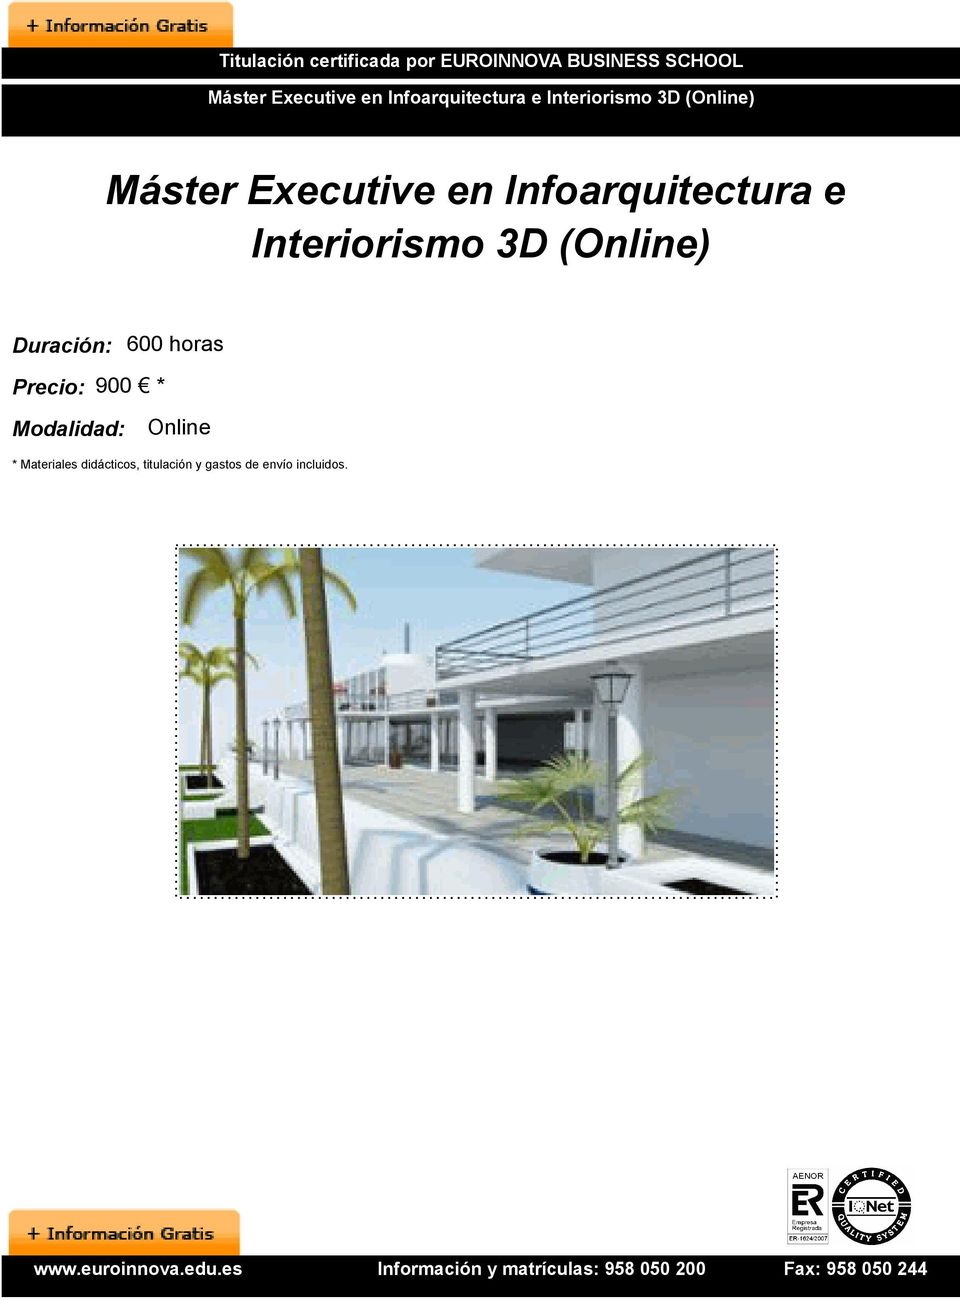 Infoarquitectura e Interiorismo 3D (Online) Duración: 600 horas Precio: